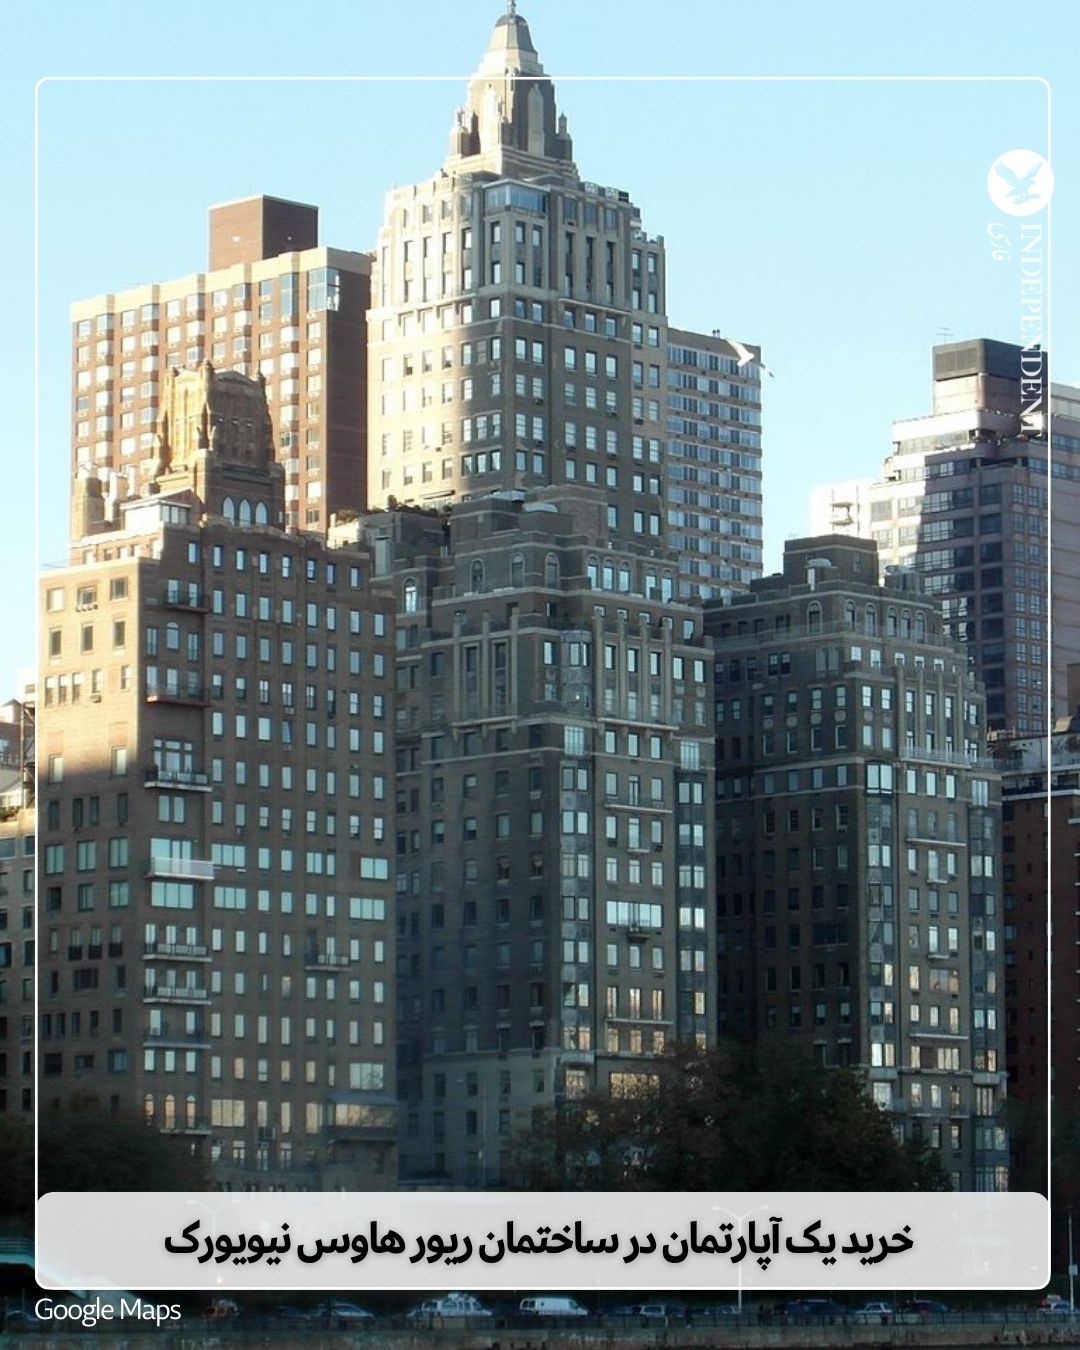  ساختمان ریور هاوس در نیویورک.jpg